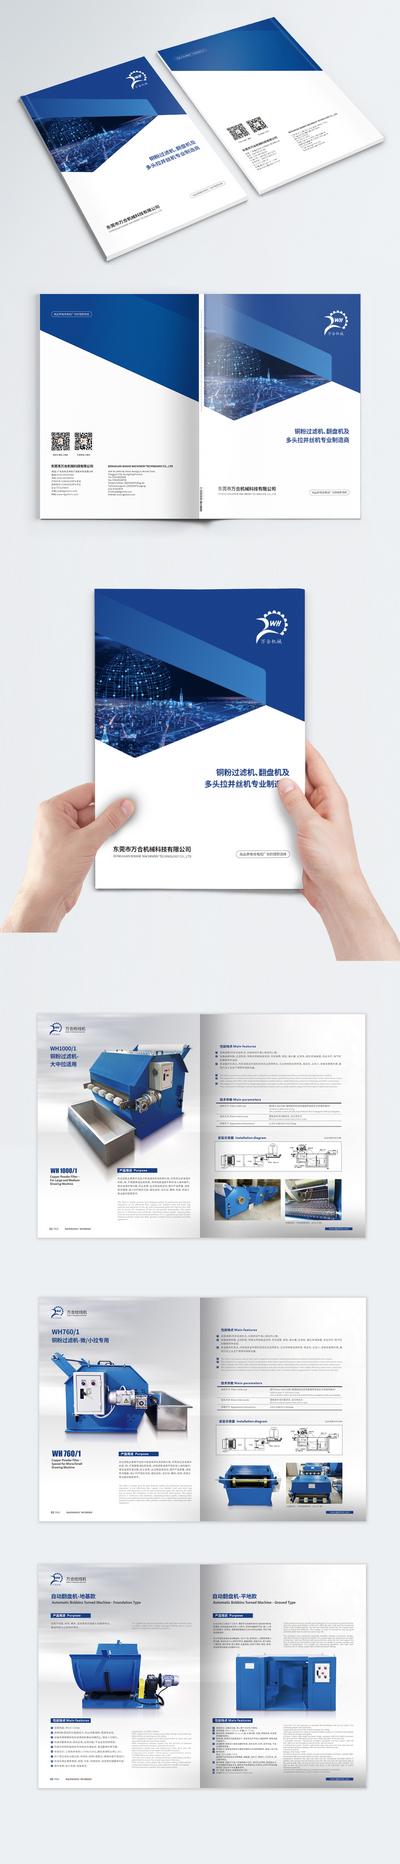 南门网 画册 手册 企业 工业 机械 蓝白